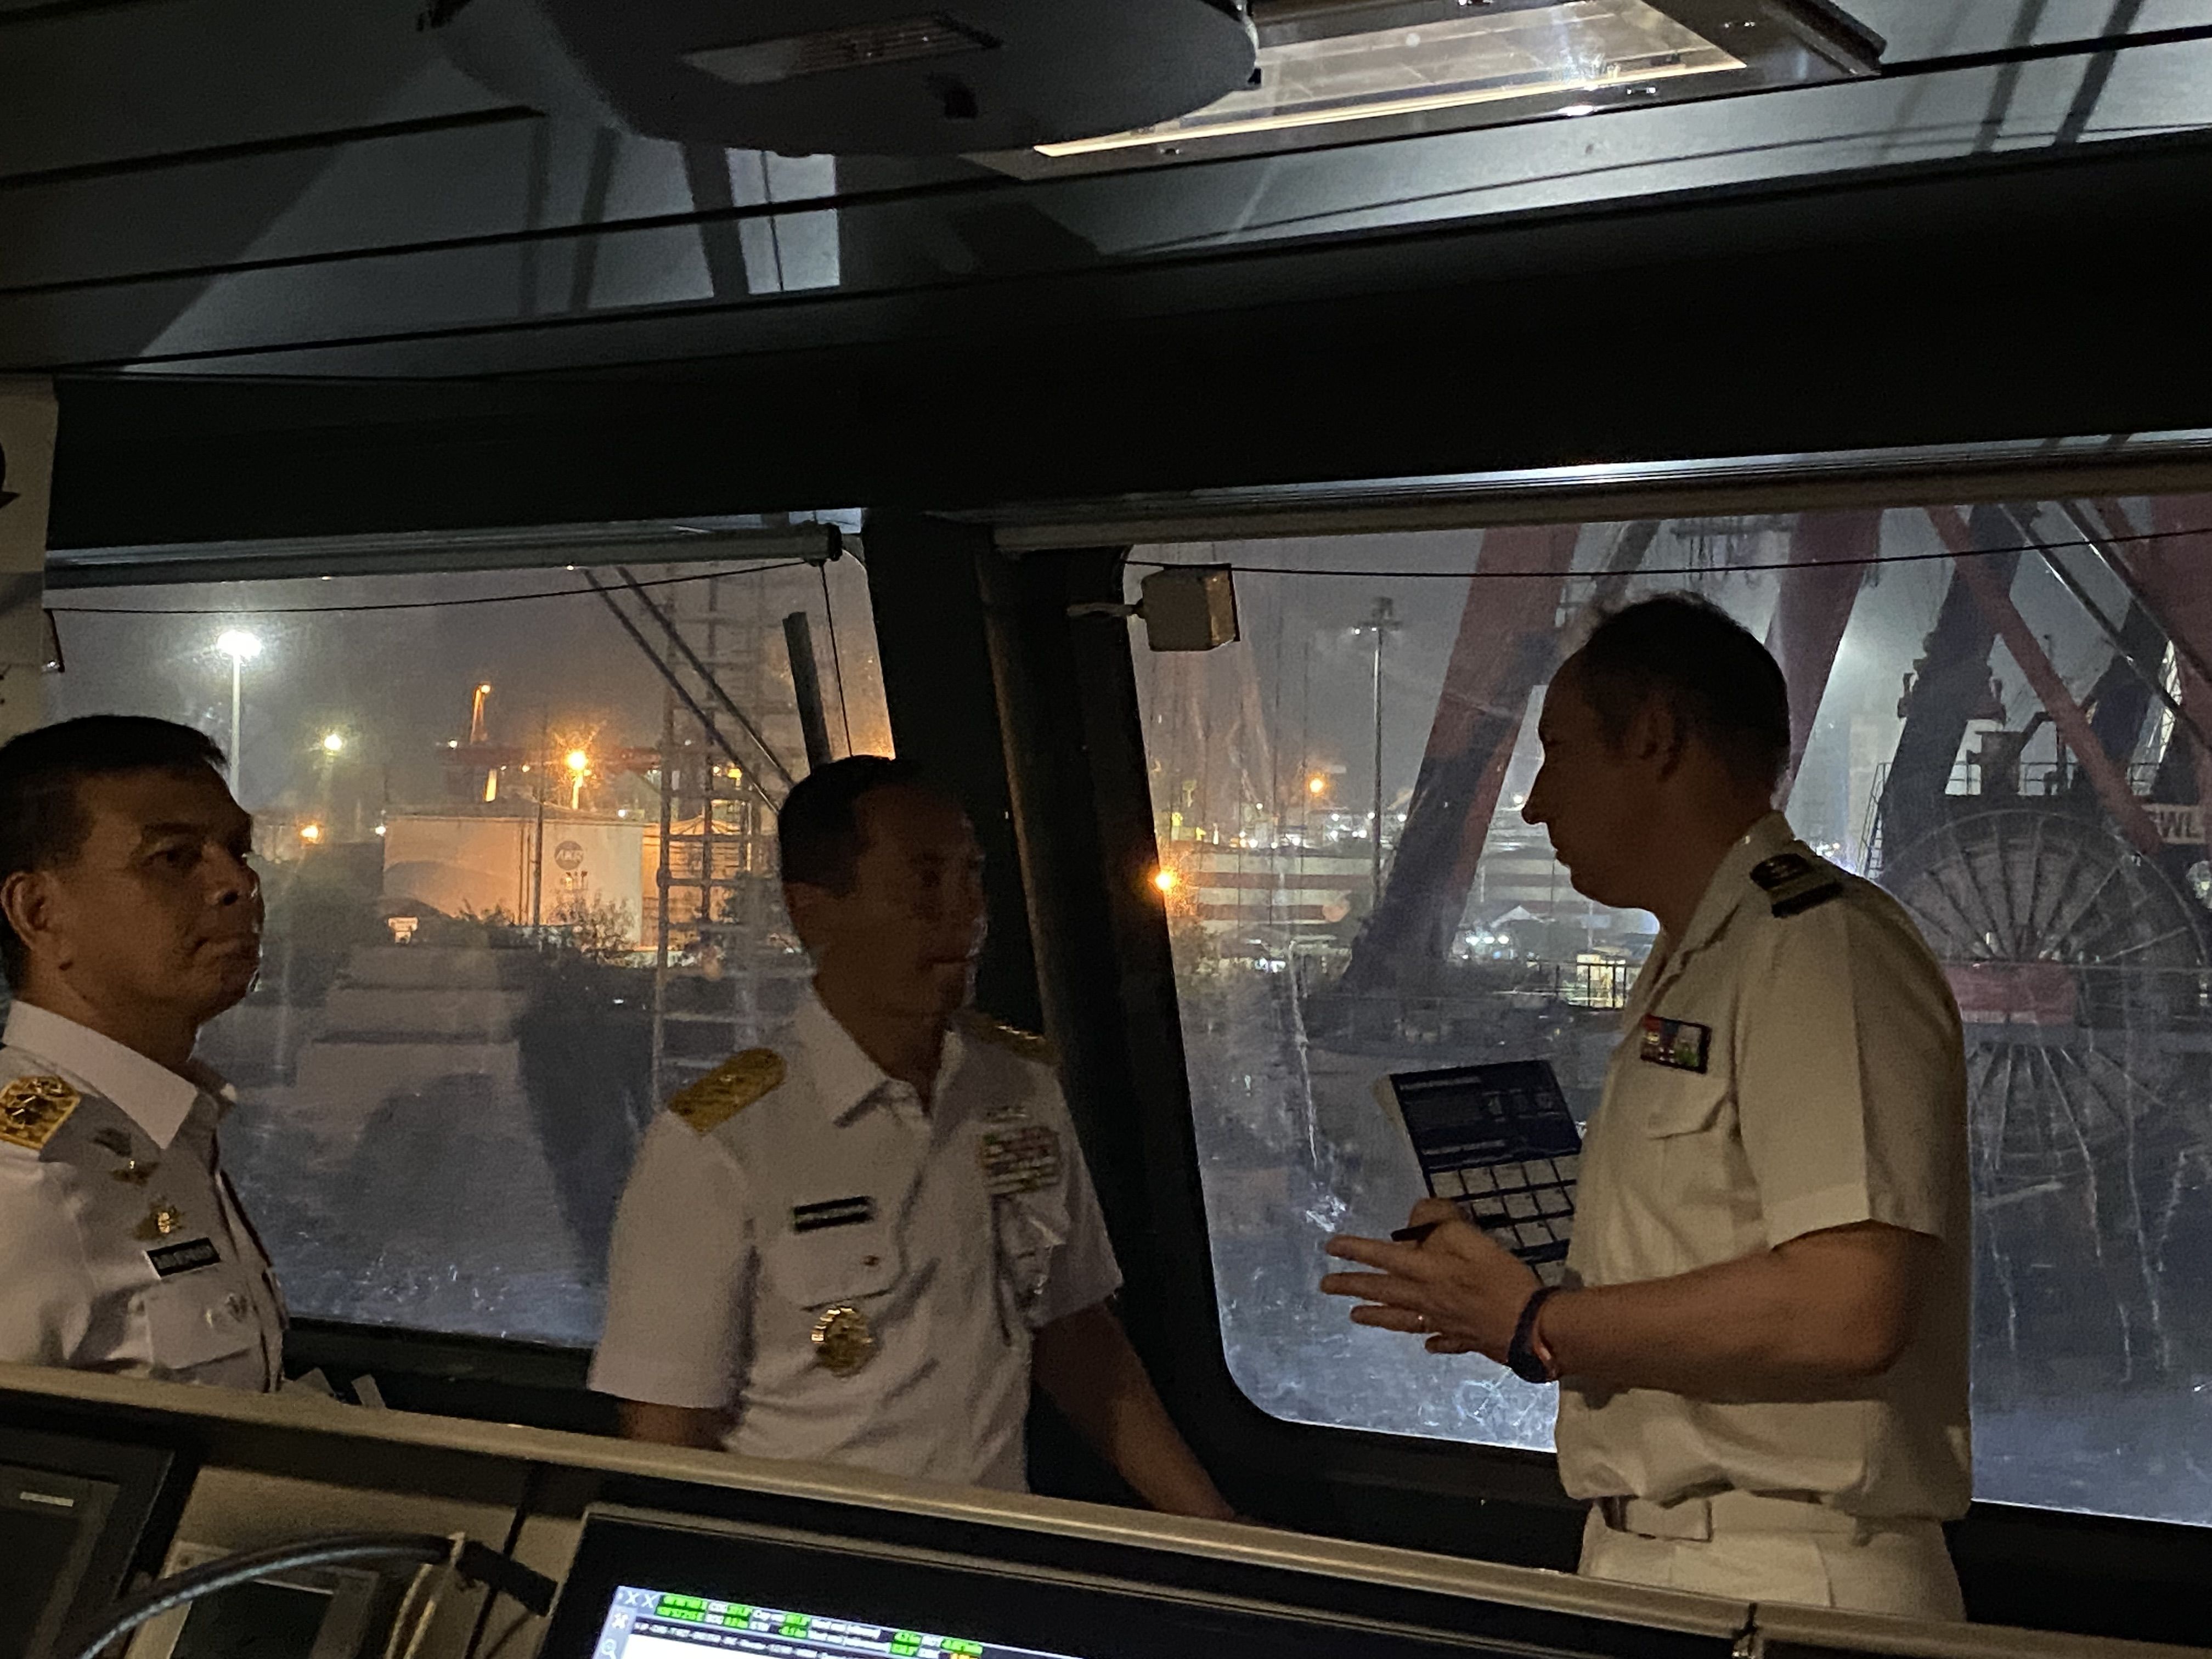 Mengintip Kecanggihan Kapal Perang Perancis FREMM Bretagne D655 yang Bersandar di Jakarta